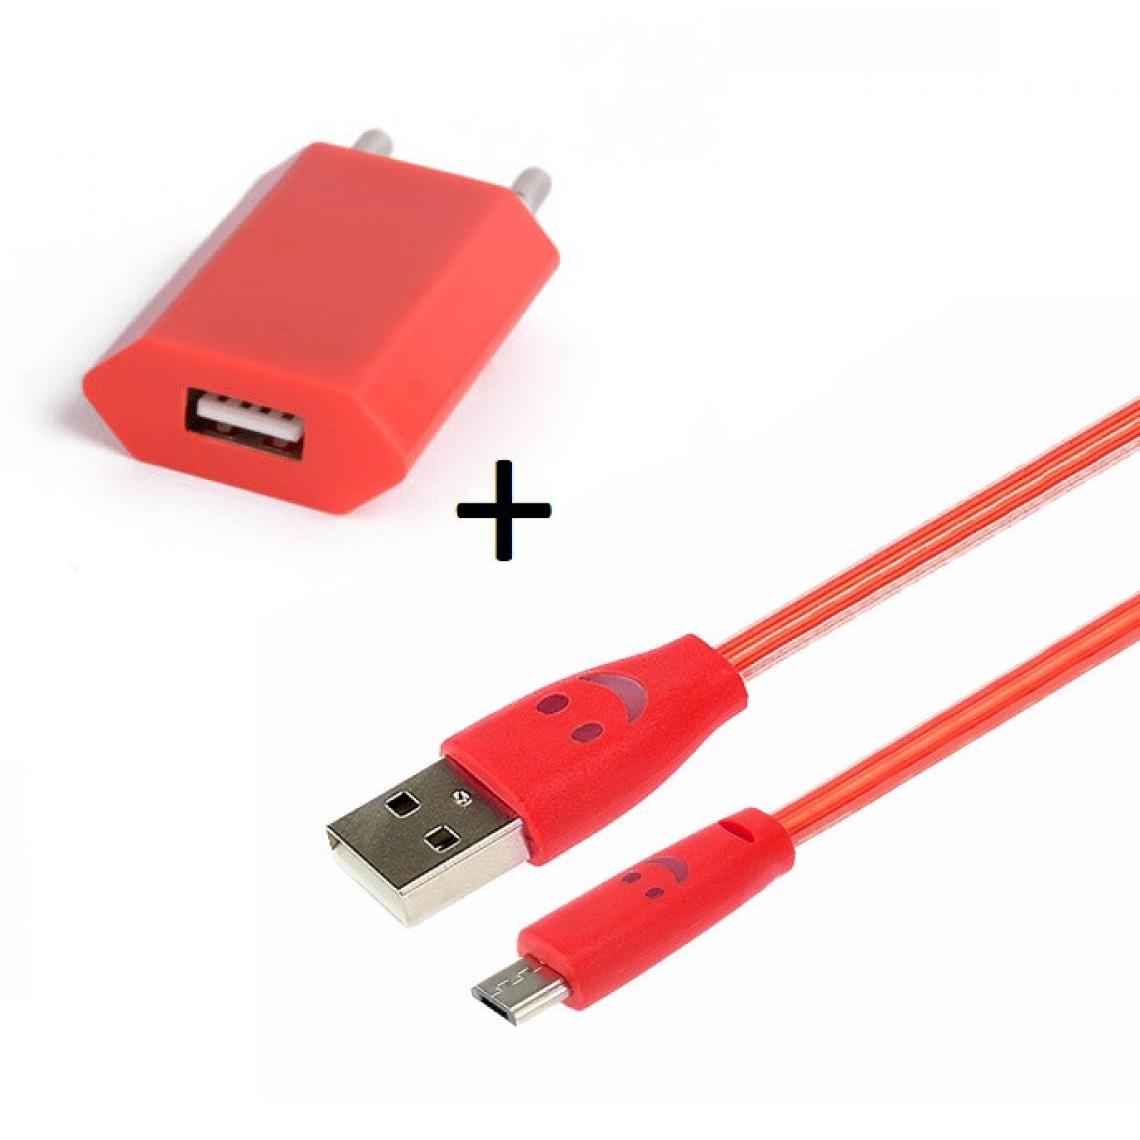 Shot - Pack Chargeur pour JBL CLIP 3 Smartphone Micro USB (Cable Smiley LED + Prise Secteur USB) Android (ROUGE) - Chargeur secteur téléphone